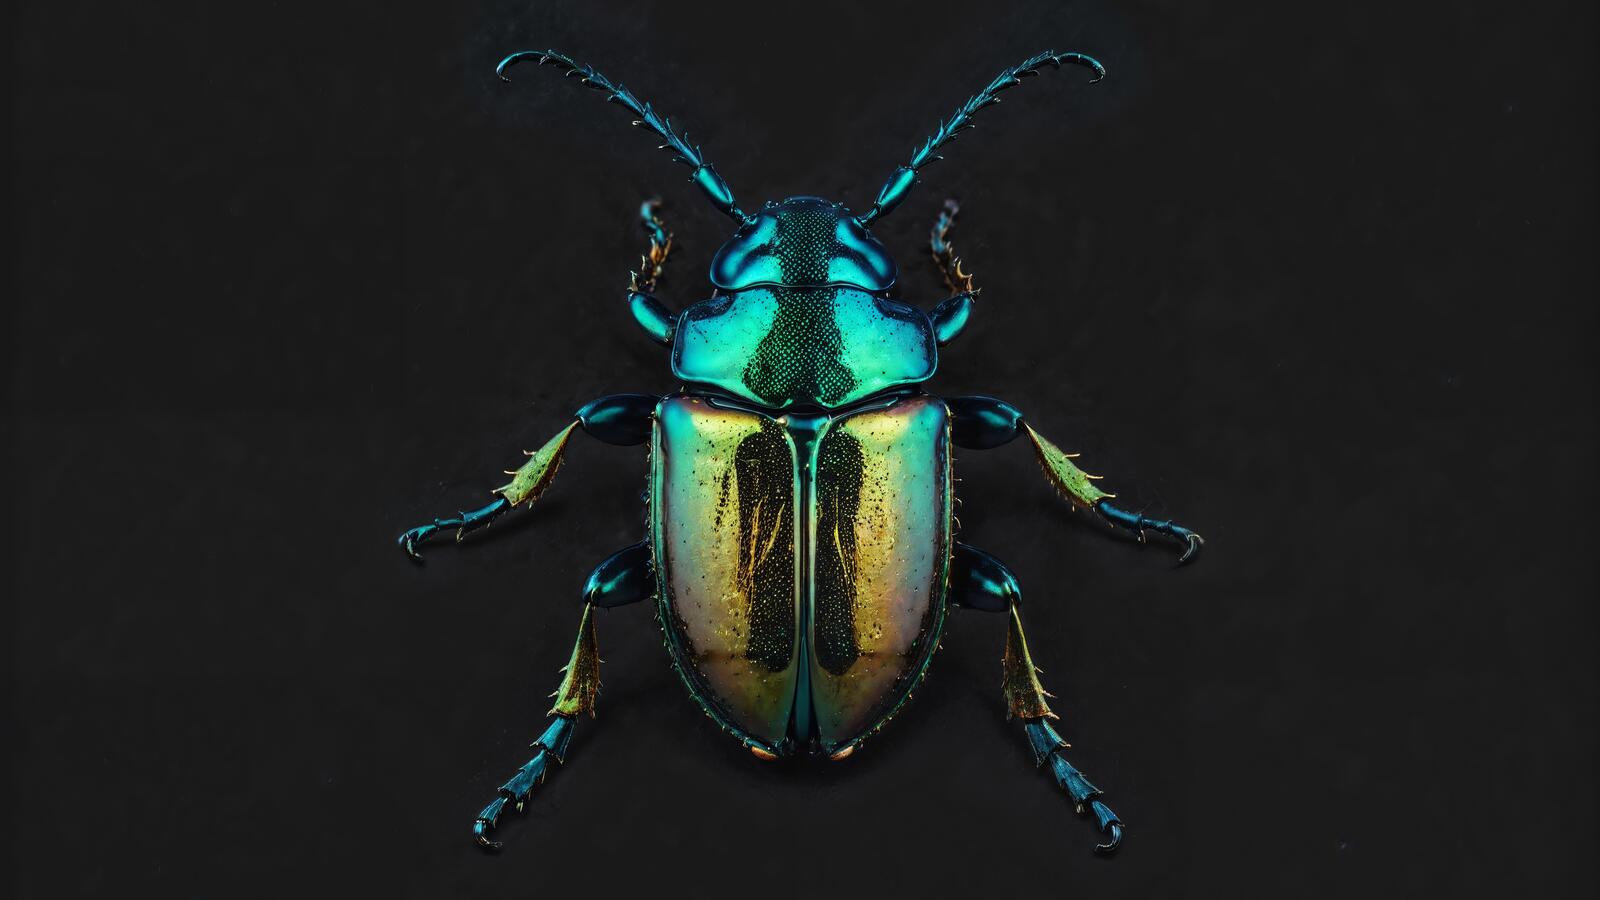 Бесплатное фото На этом снимке виден большой зеленый жук